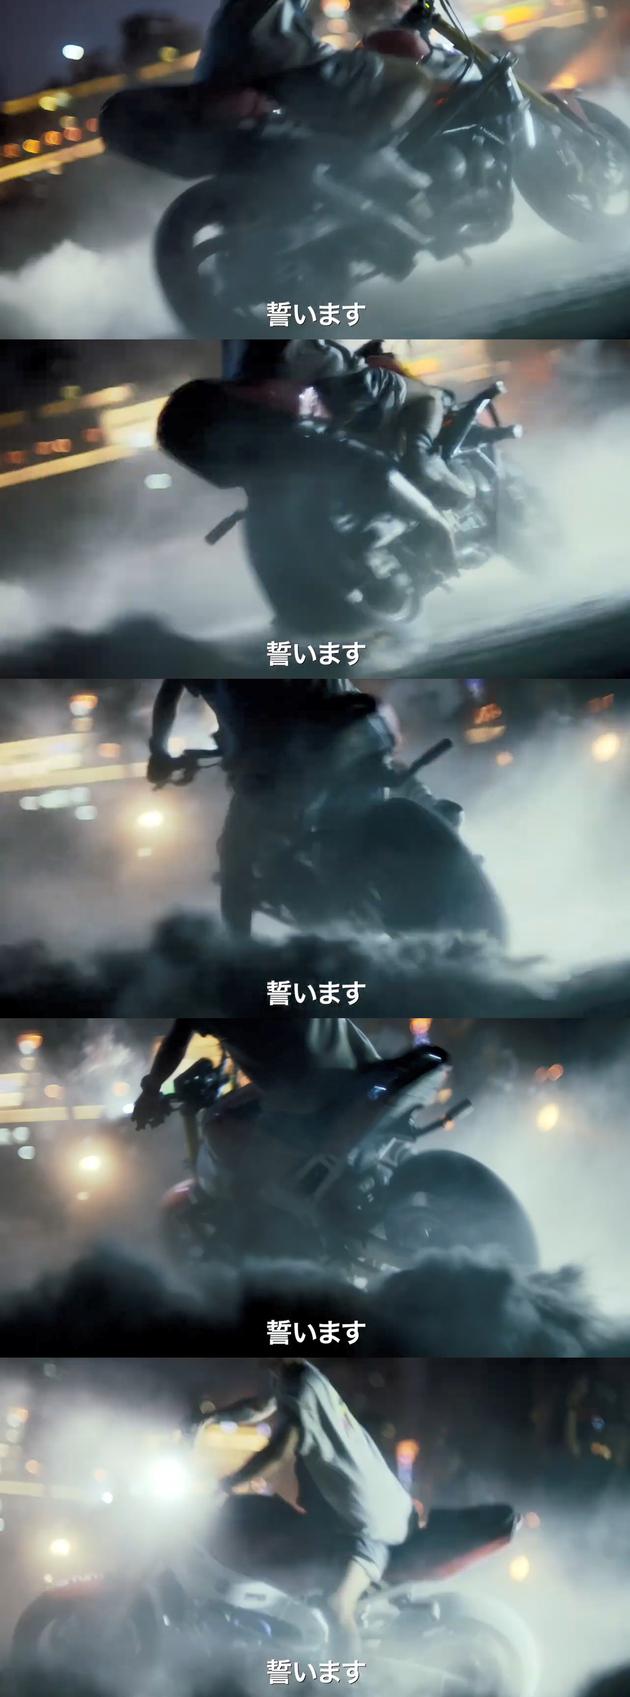 《少年的你》日本版预告曝光，新增易烊千玺骑摩托漂移画面